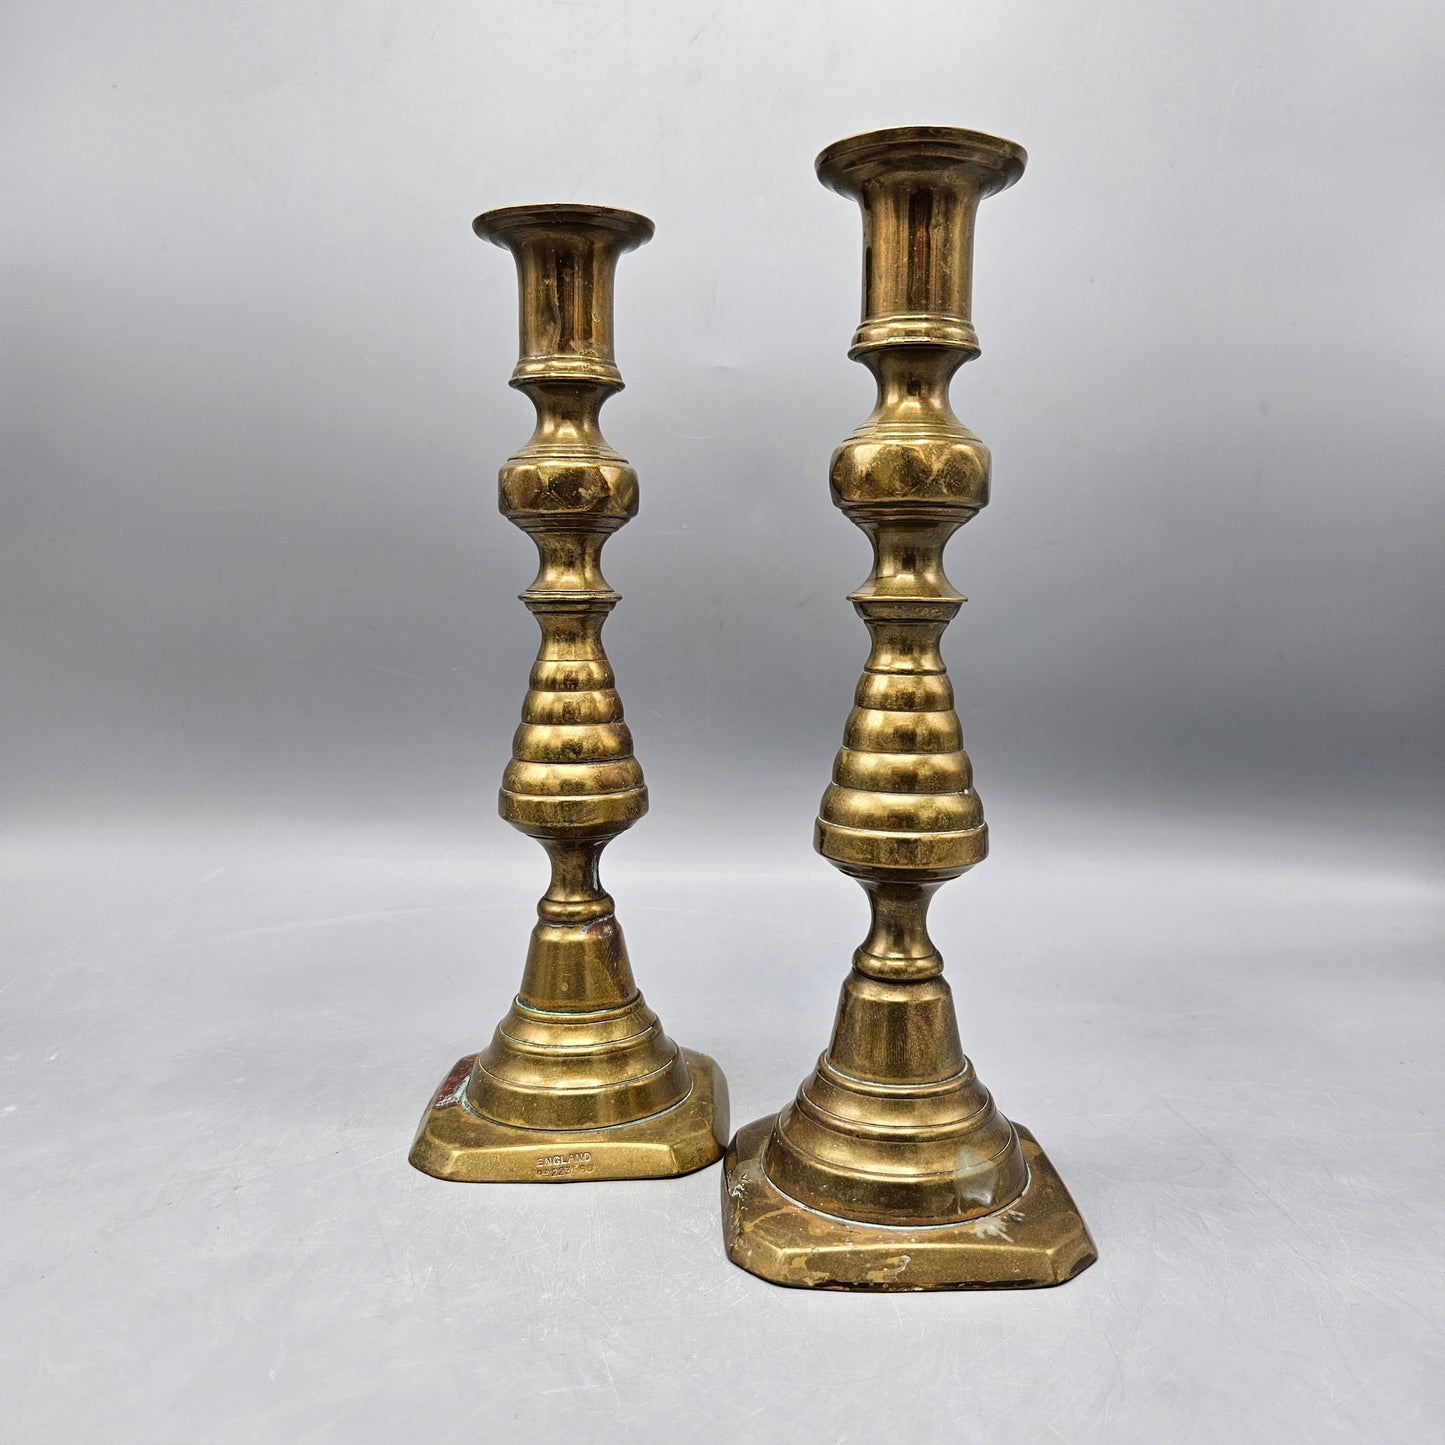 Vintage Pair of English Brass Pushup Candlesticks